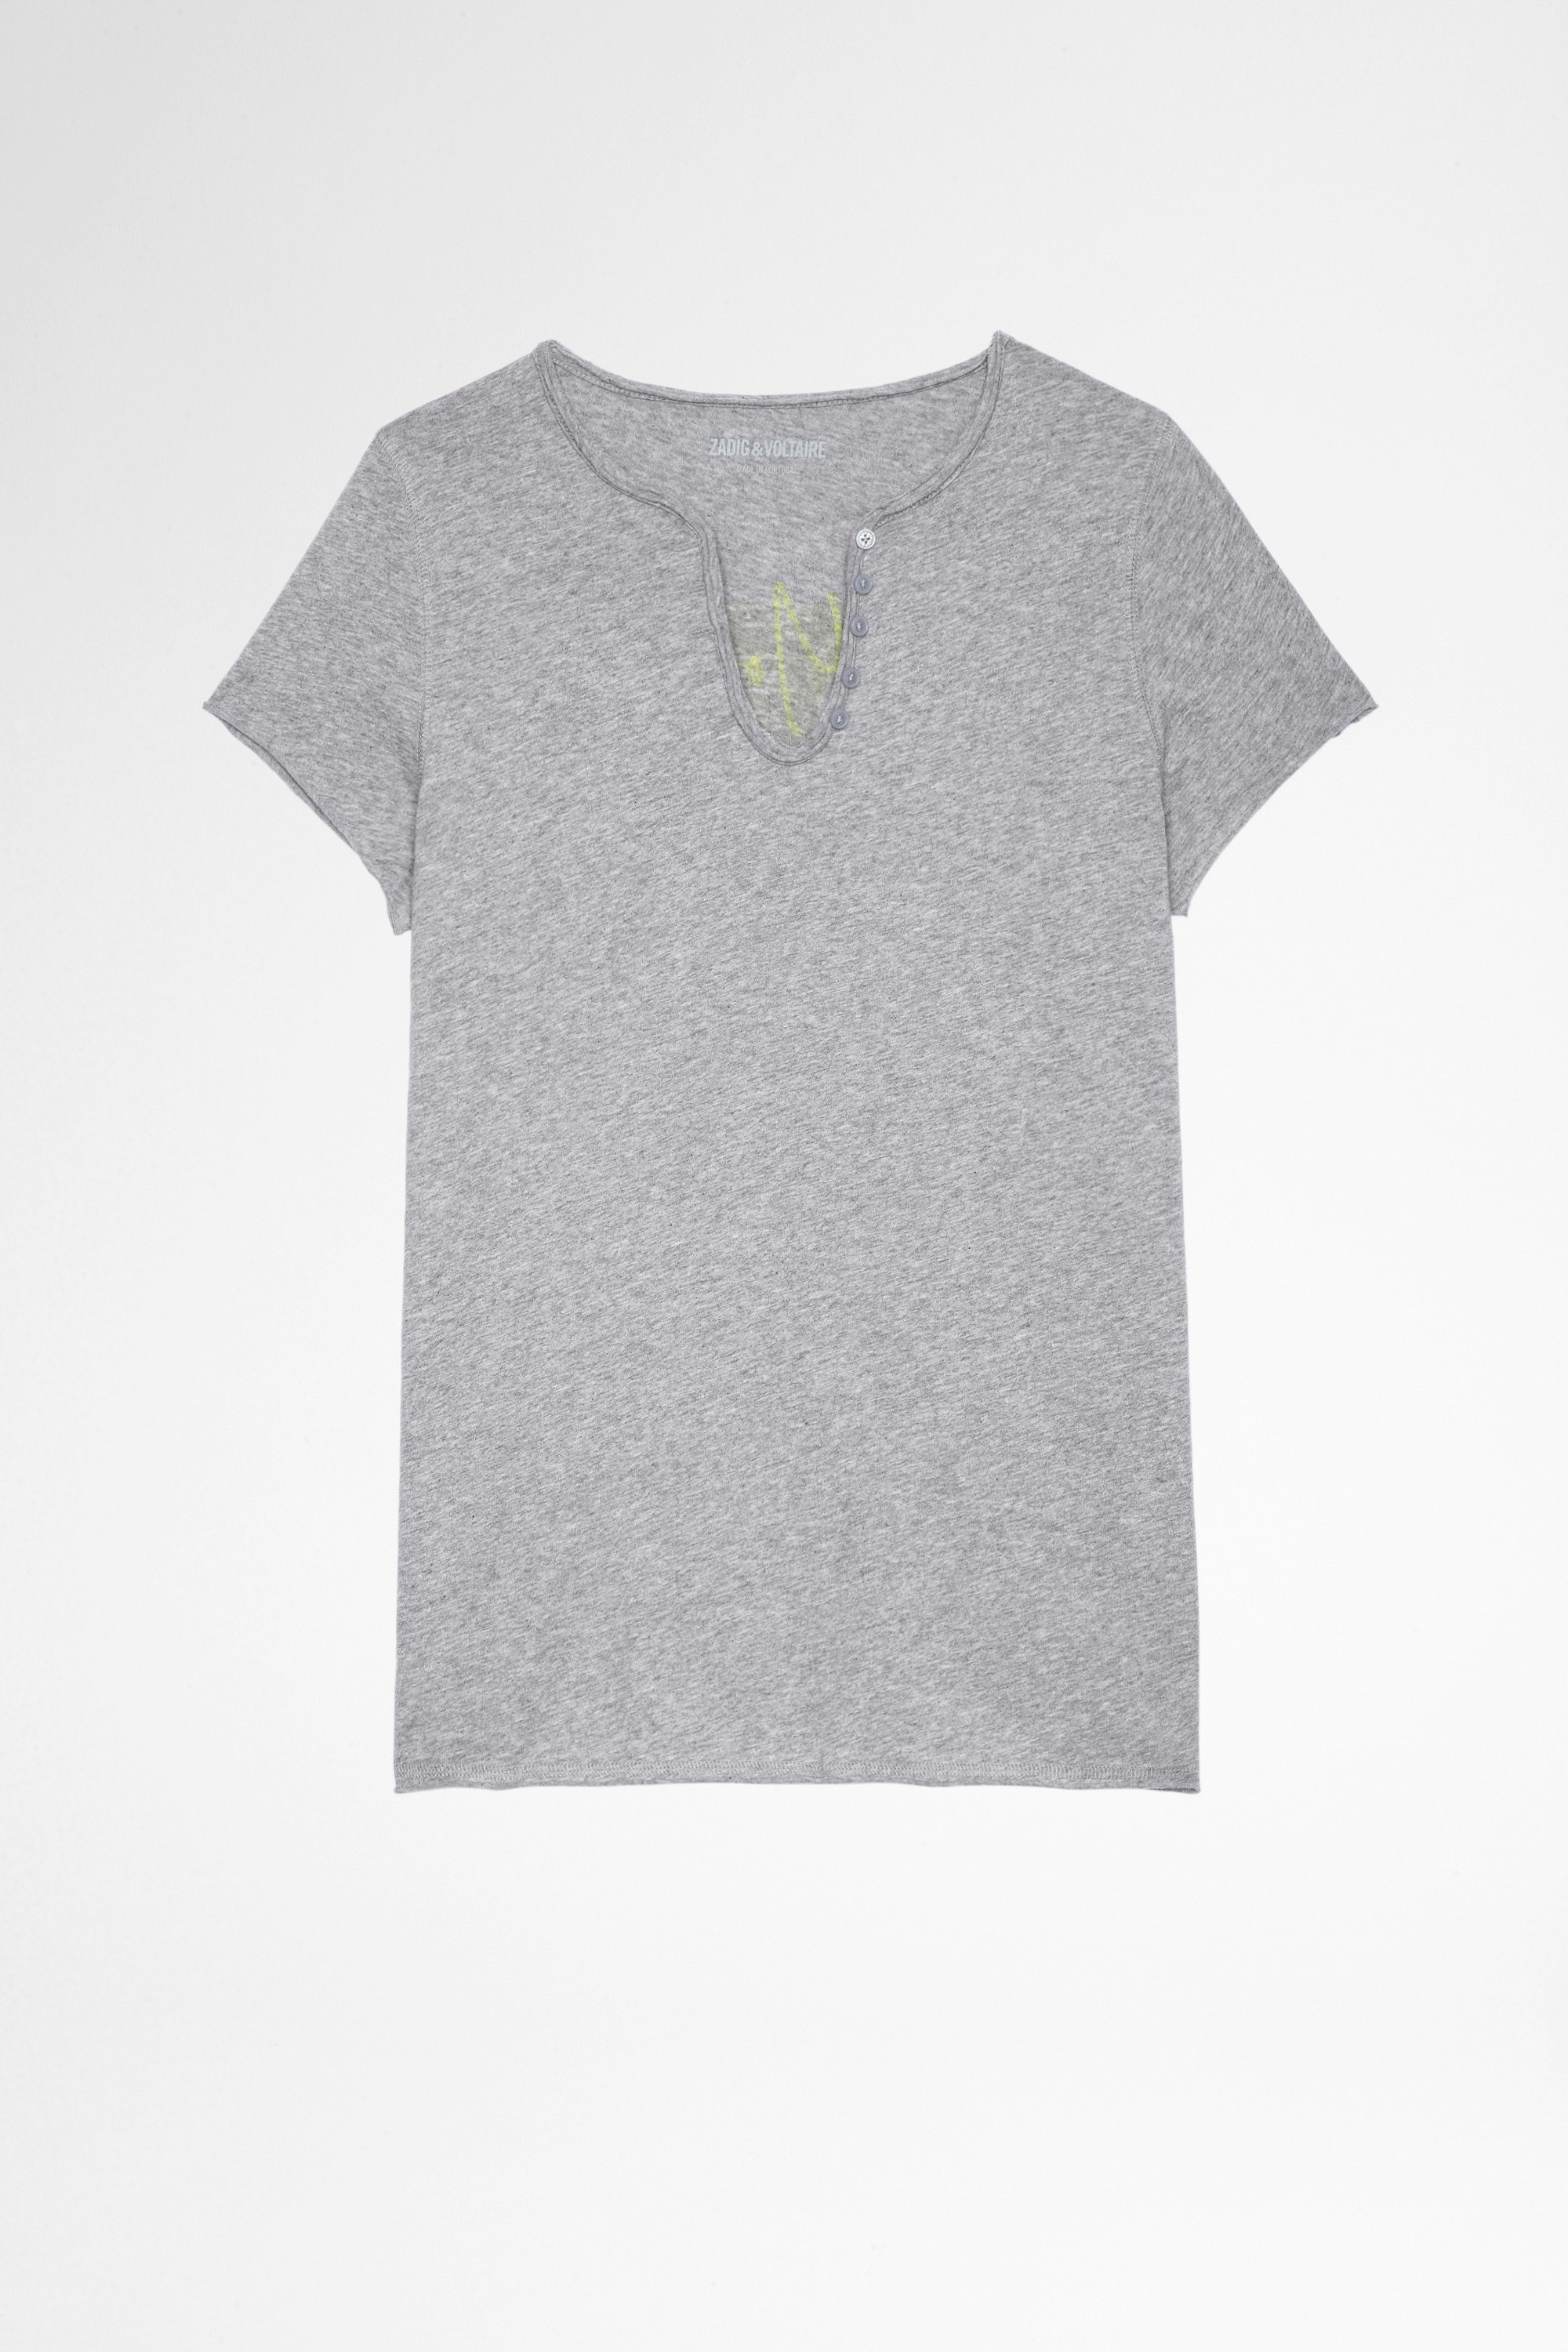 Camiseta Tunisien Photoprint Camiseta de mujer de algodón gris y cuello tunecino con estampado fotográfico en la espalda. Confeccionado con fibras procedentes de la agricultura ecológica.